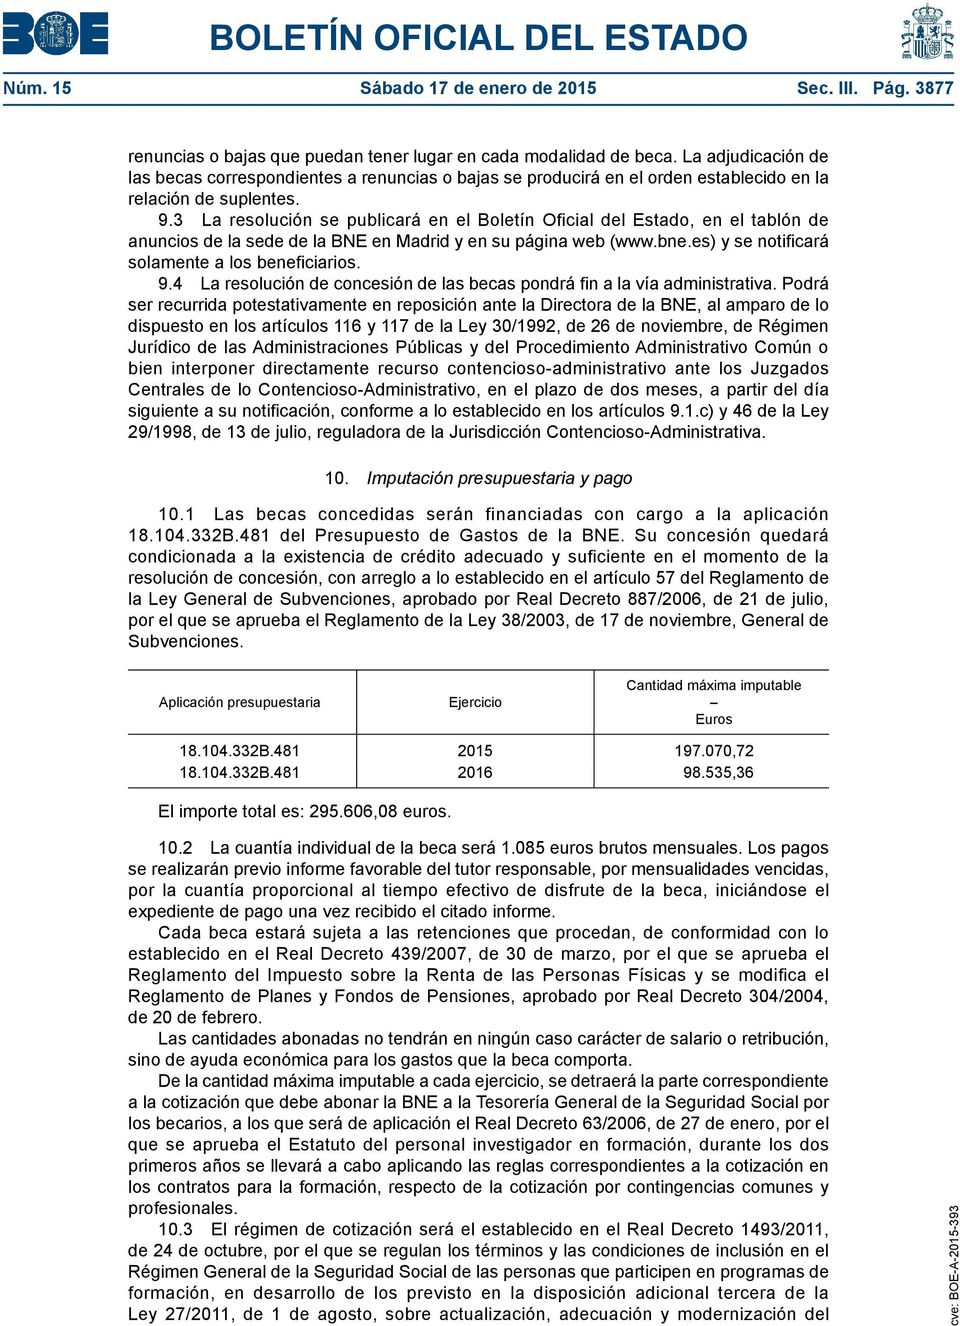 3 La resolución se publicará en el Boletín Oficial del Estado, en el tablón de anuncios de la sede de la BNE en Madrid y en su página web (www.bne.es) y se notificará solamente a los beneficiarios. 9.